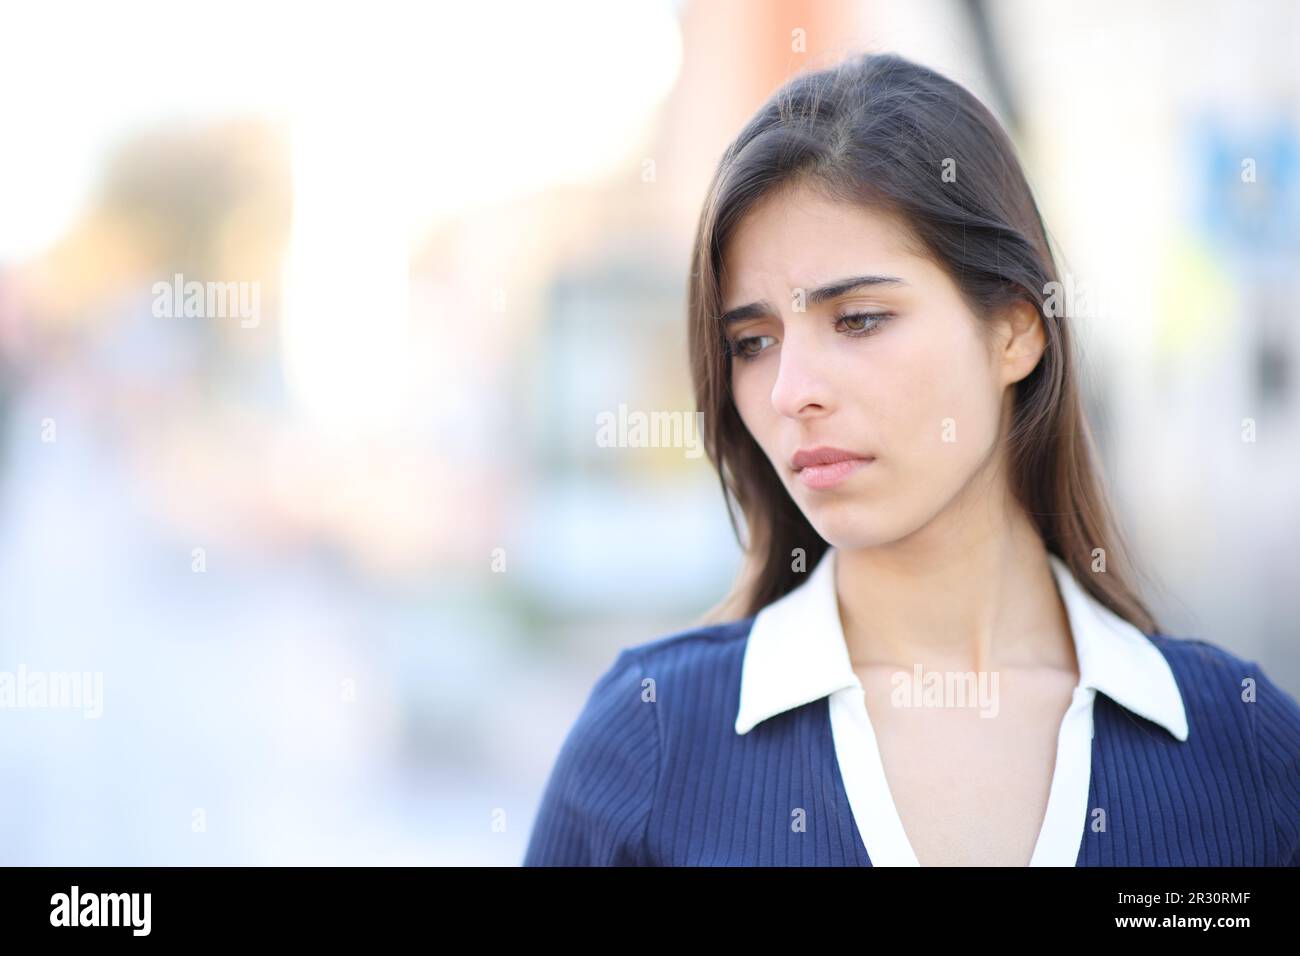 Una donna triste si lamentava di guardare giù camminando per strada Foto Stock